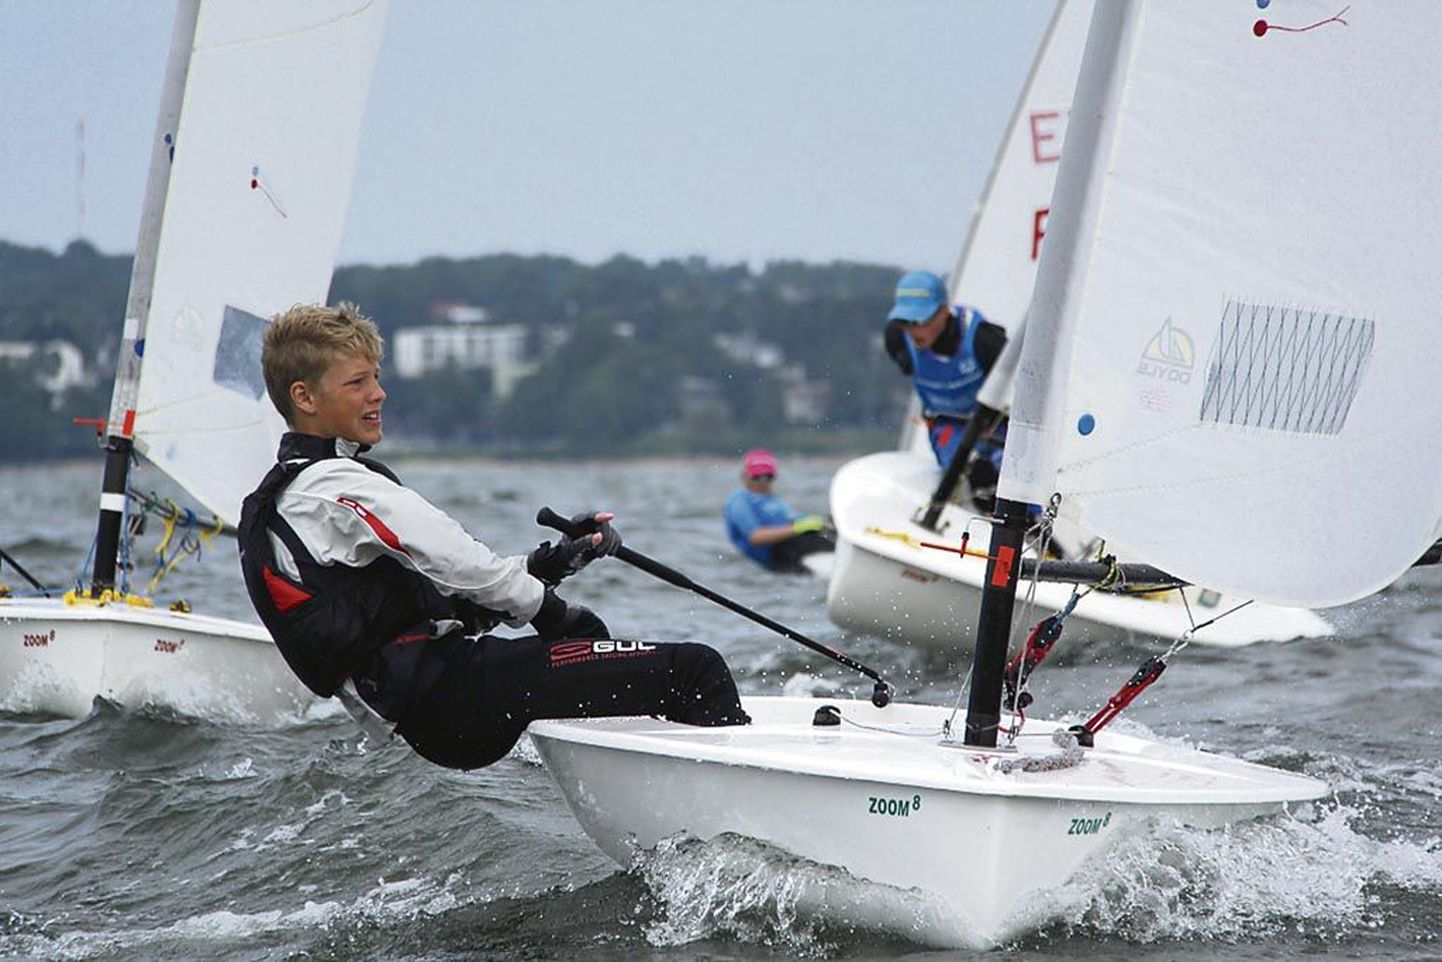 16aastane Keith Luur on seadnud eesmärgiks seilata kunagi olümpiaregatil.